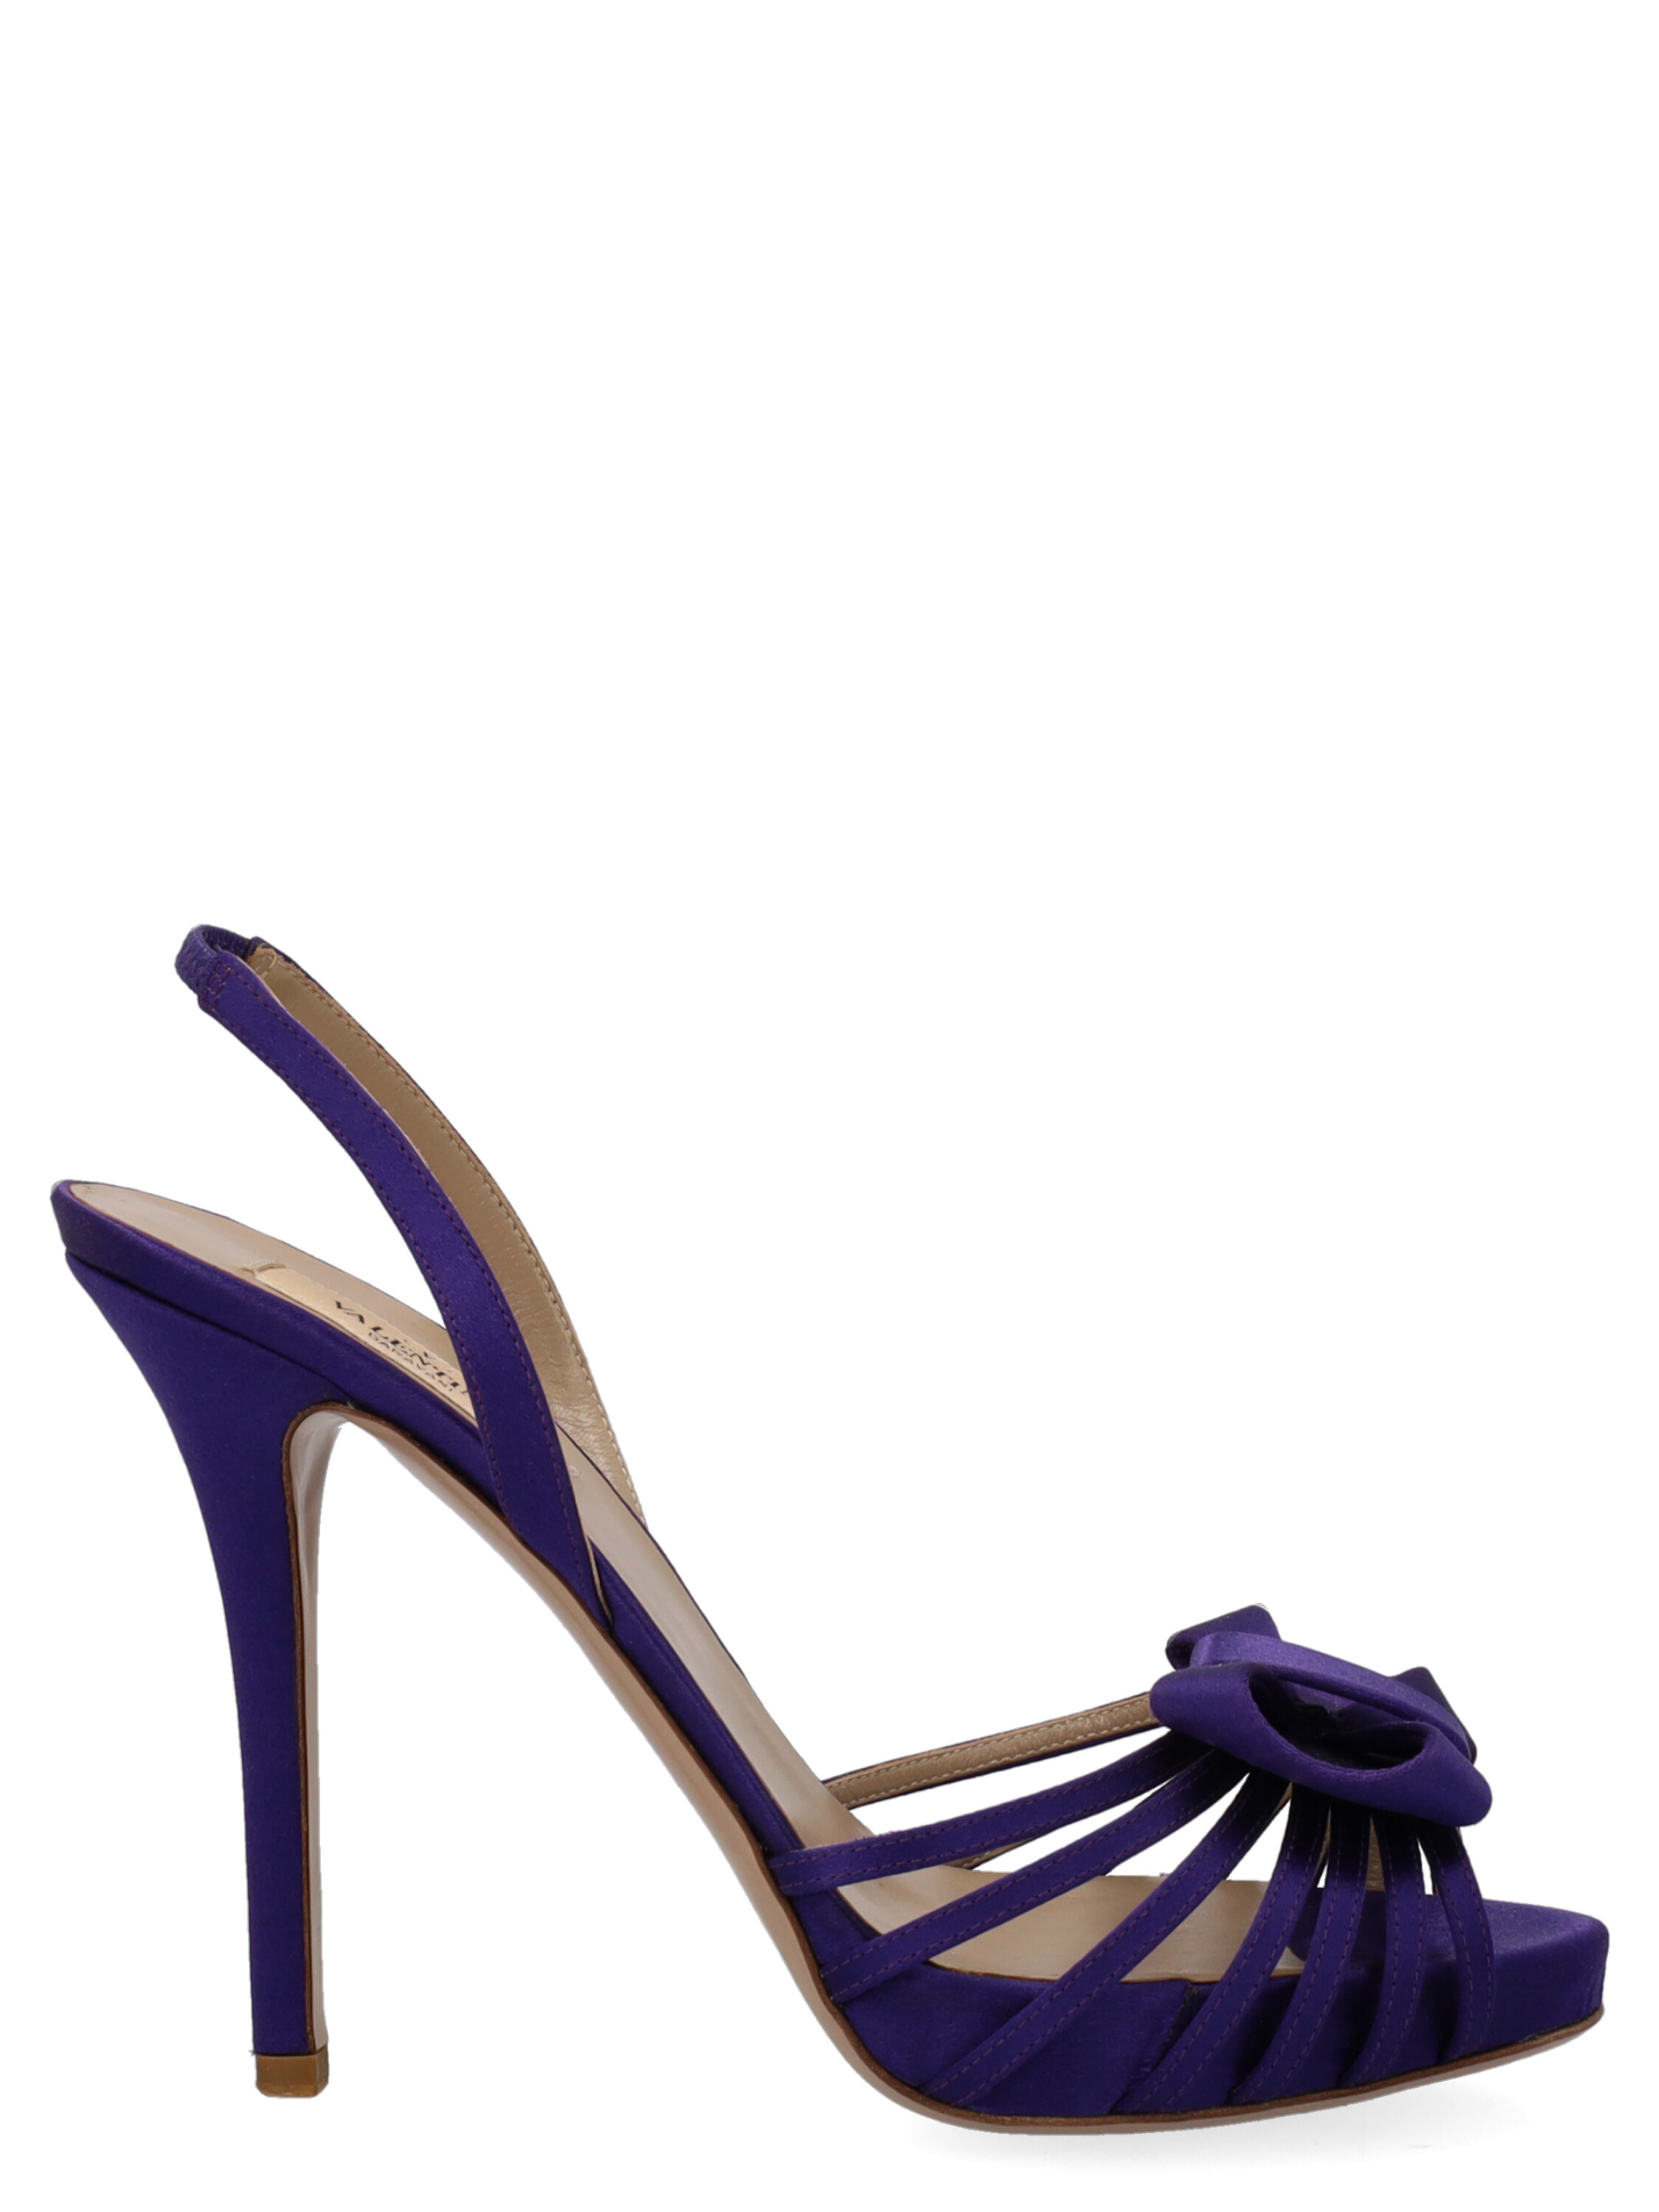 Pre-owned Valentino Garavani Women's Sandals - Valentino - In Purple Fabric